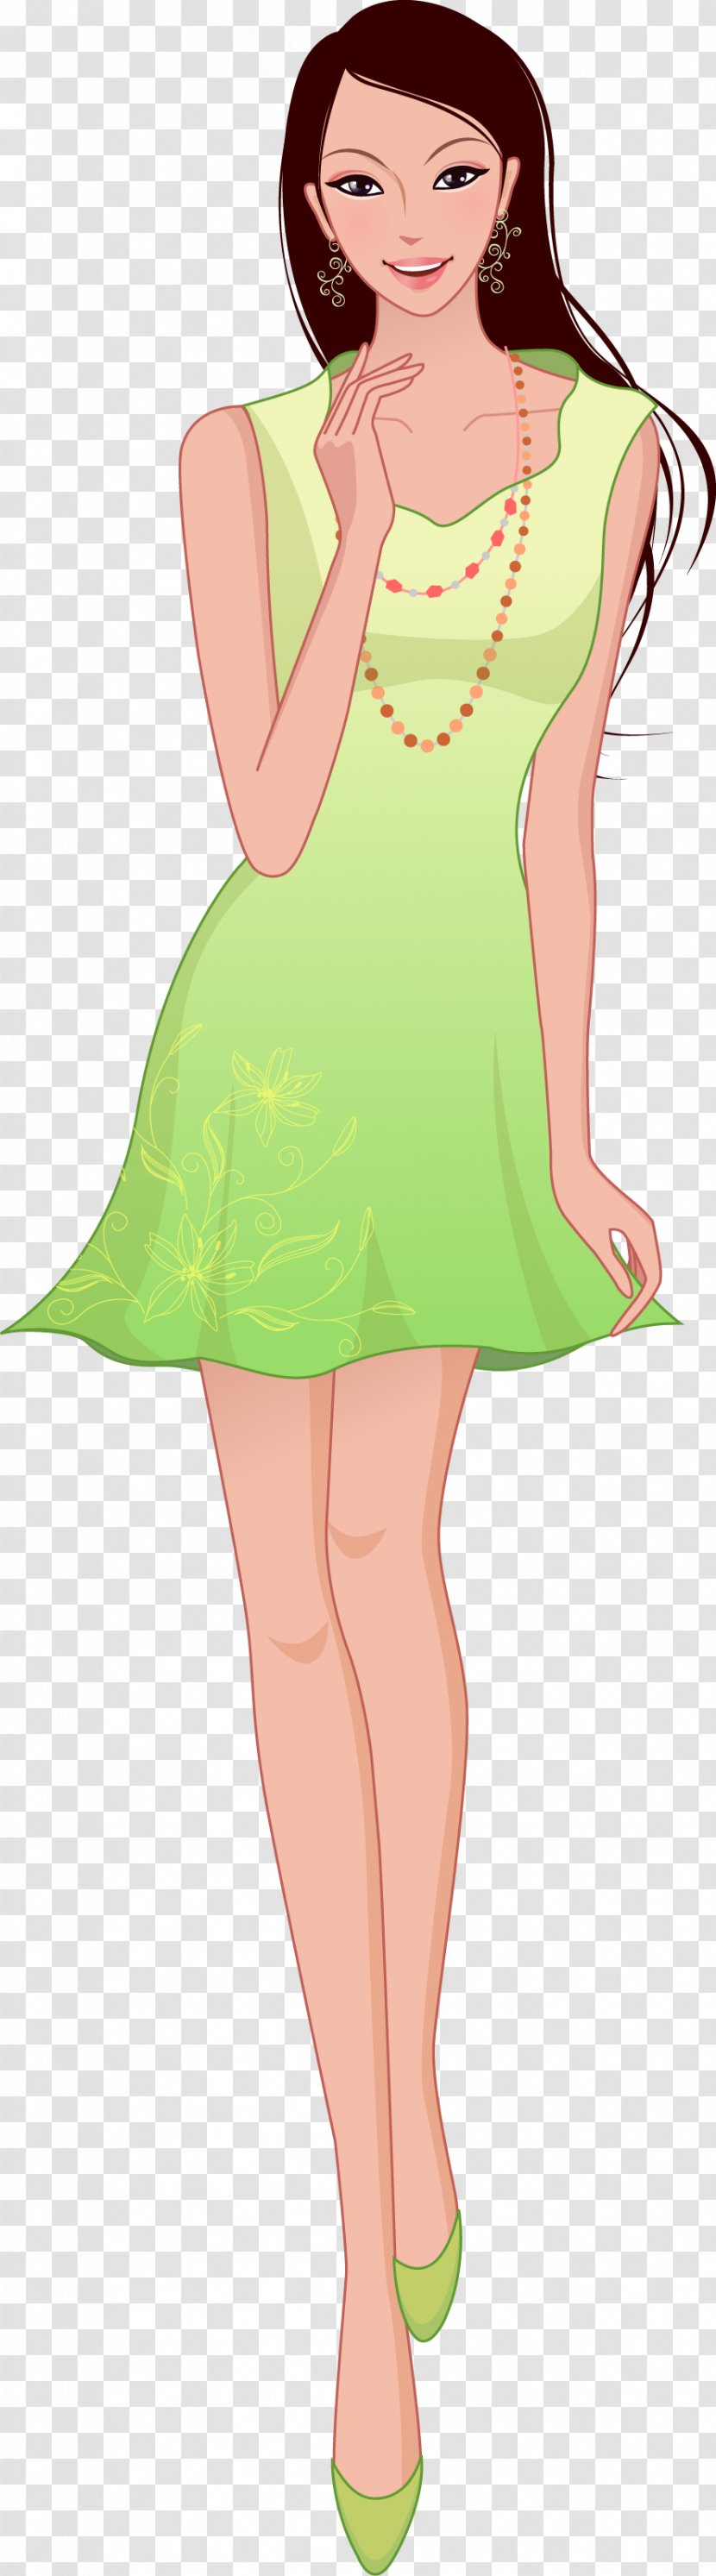 Cartoon Woman Illustration - Frame - Vector Green Dress Women Transparent PNG